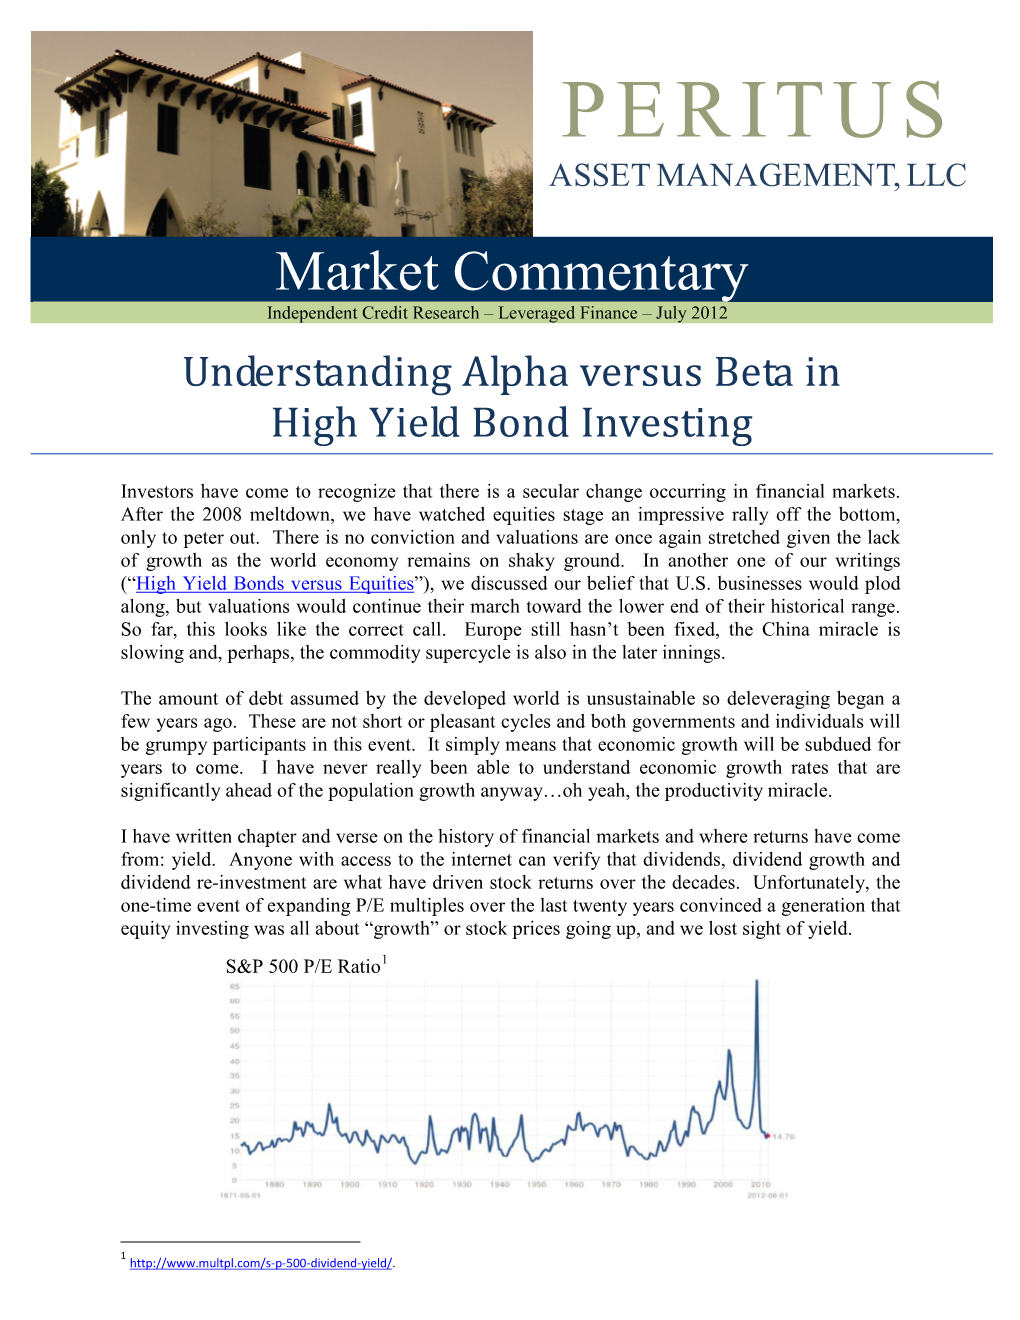 Understanding Alpha Versus Beta in High Yield Bond Investing